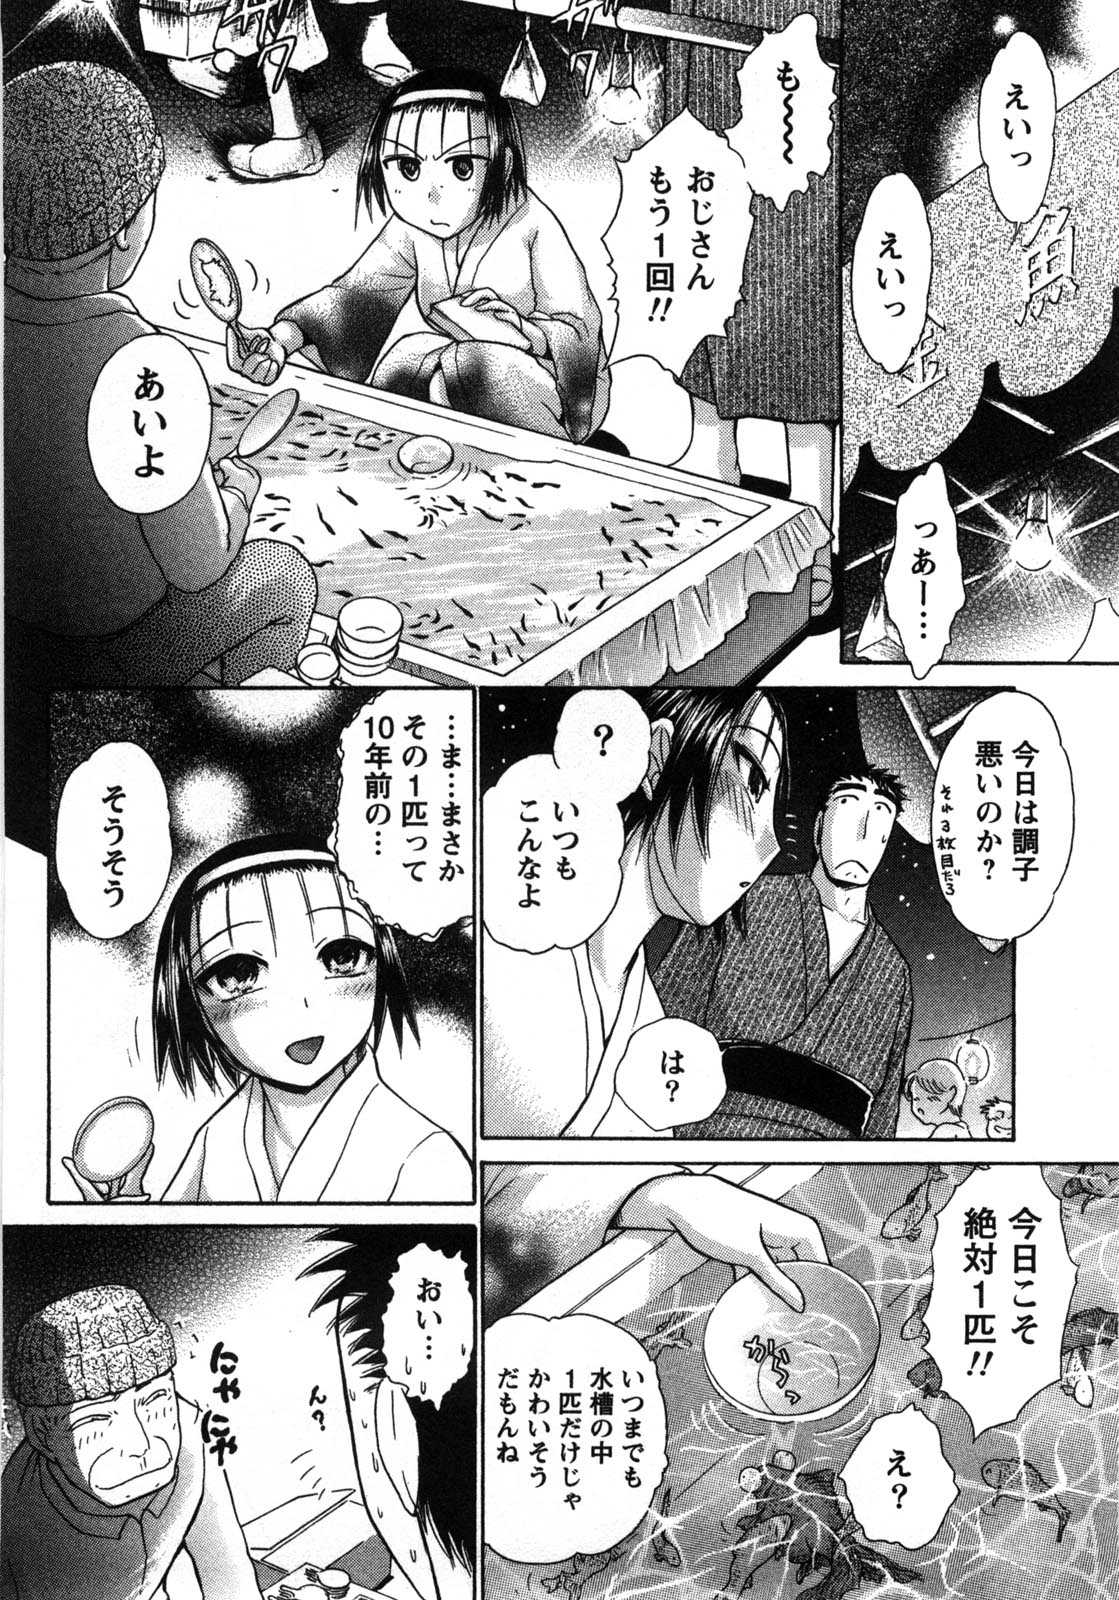 [Ayasaka Mitsune] Compass ~Ojousama to Namegoto wo~ Vol.1 [綾坂みつね] コンパス ~お嬢様と舐めゴトを♥~ 上巻 [11-04-09]